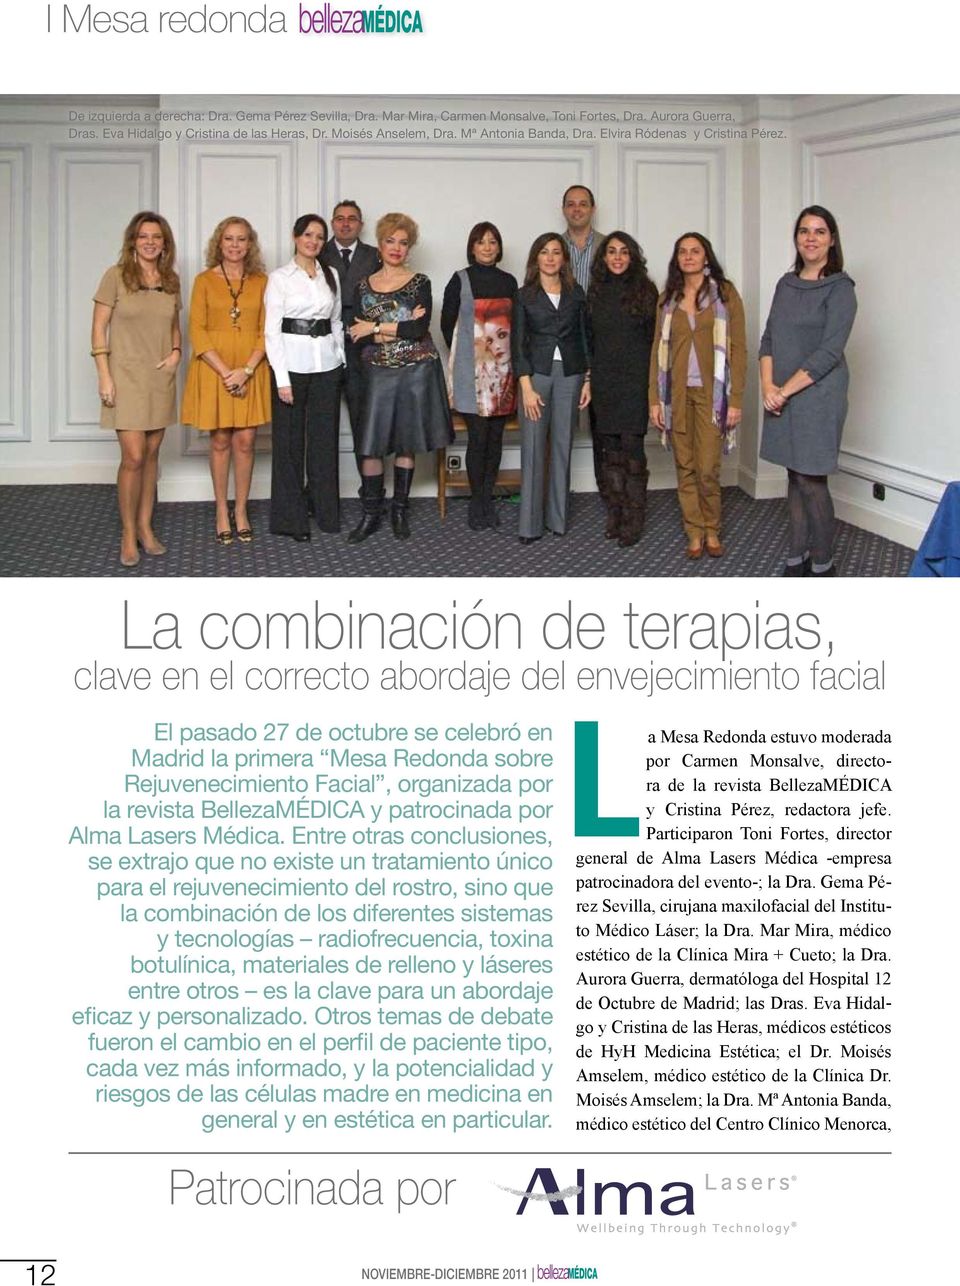 La combinación de terapias, clave en el correcto abordaje del envejecimiento facial El pasado 27 de octubre se celebró en Madrid la primera Mesa Redonda sobre Rejuvenecimiento Facial, organizada por